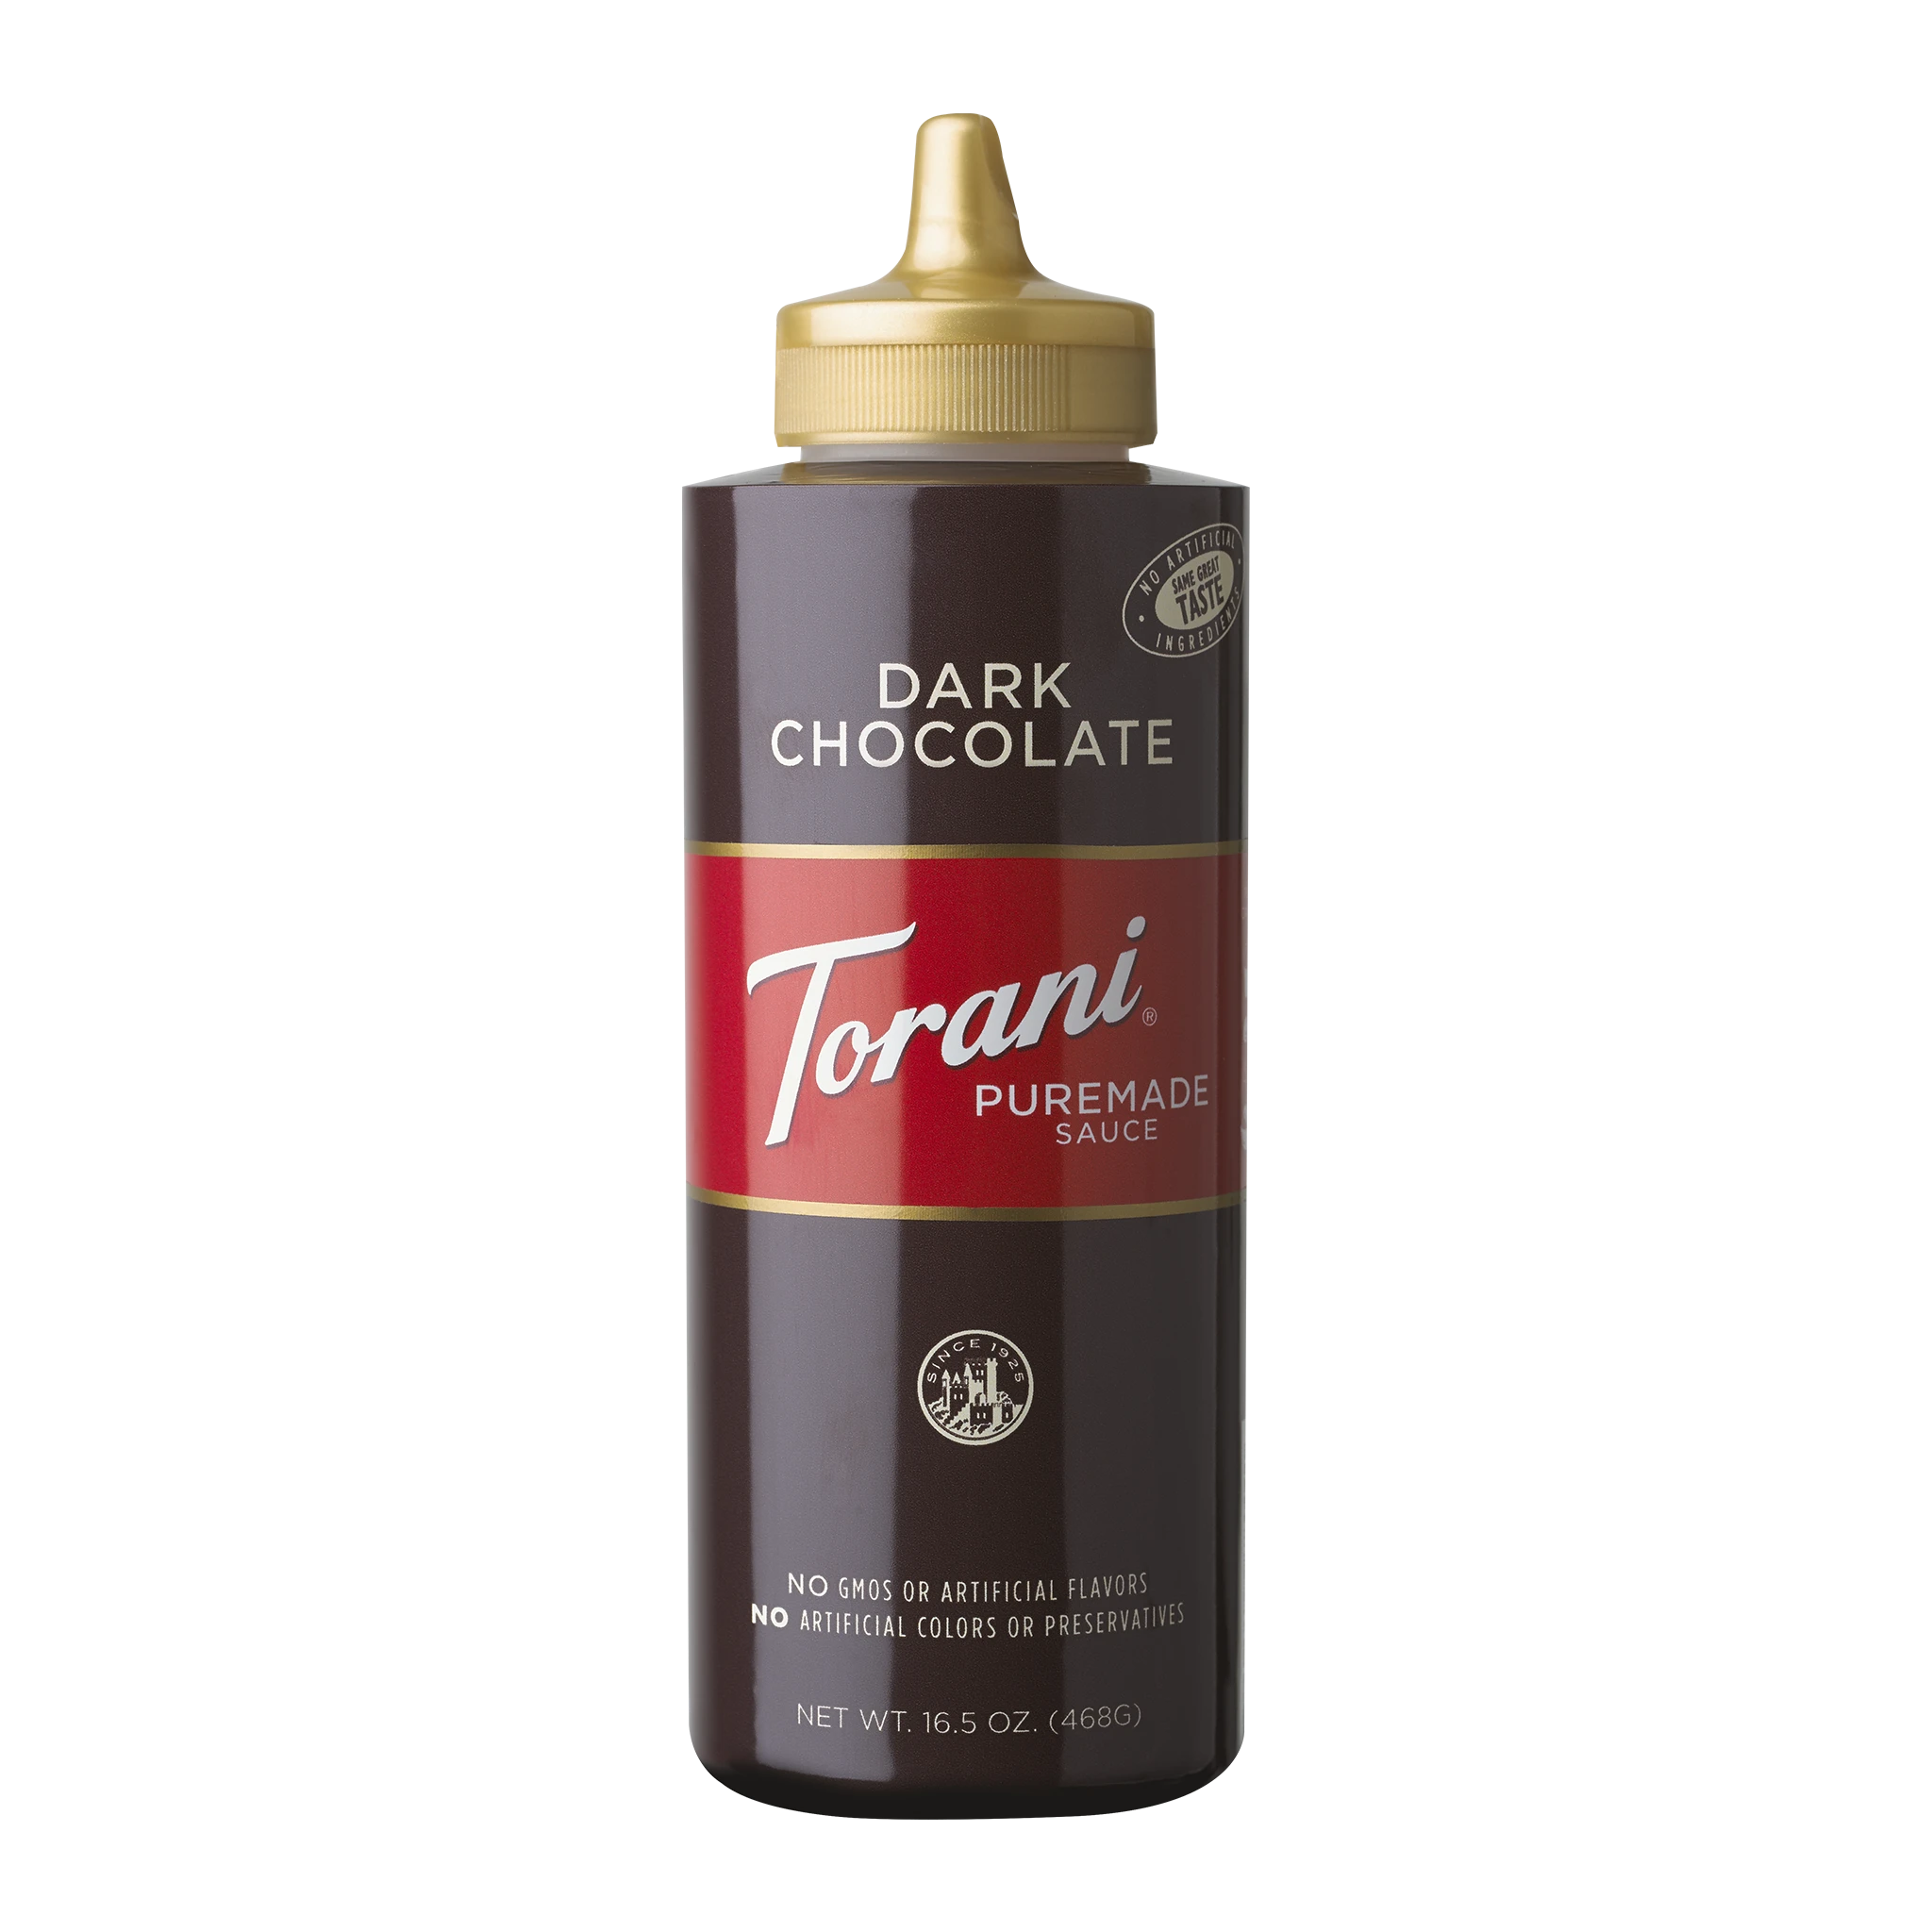 Torani Puremade sauce